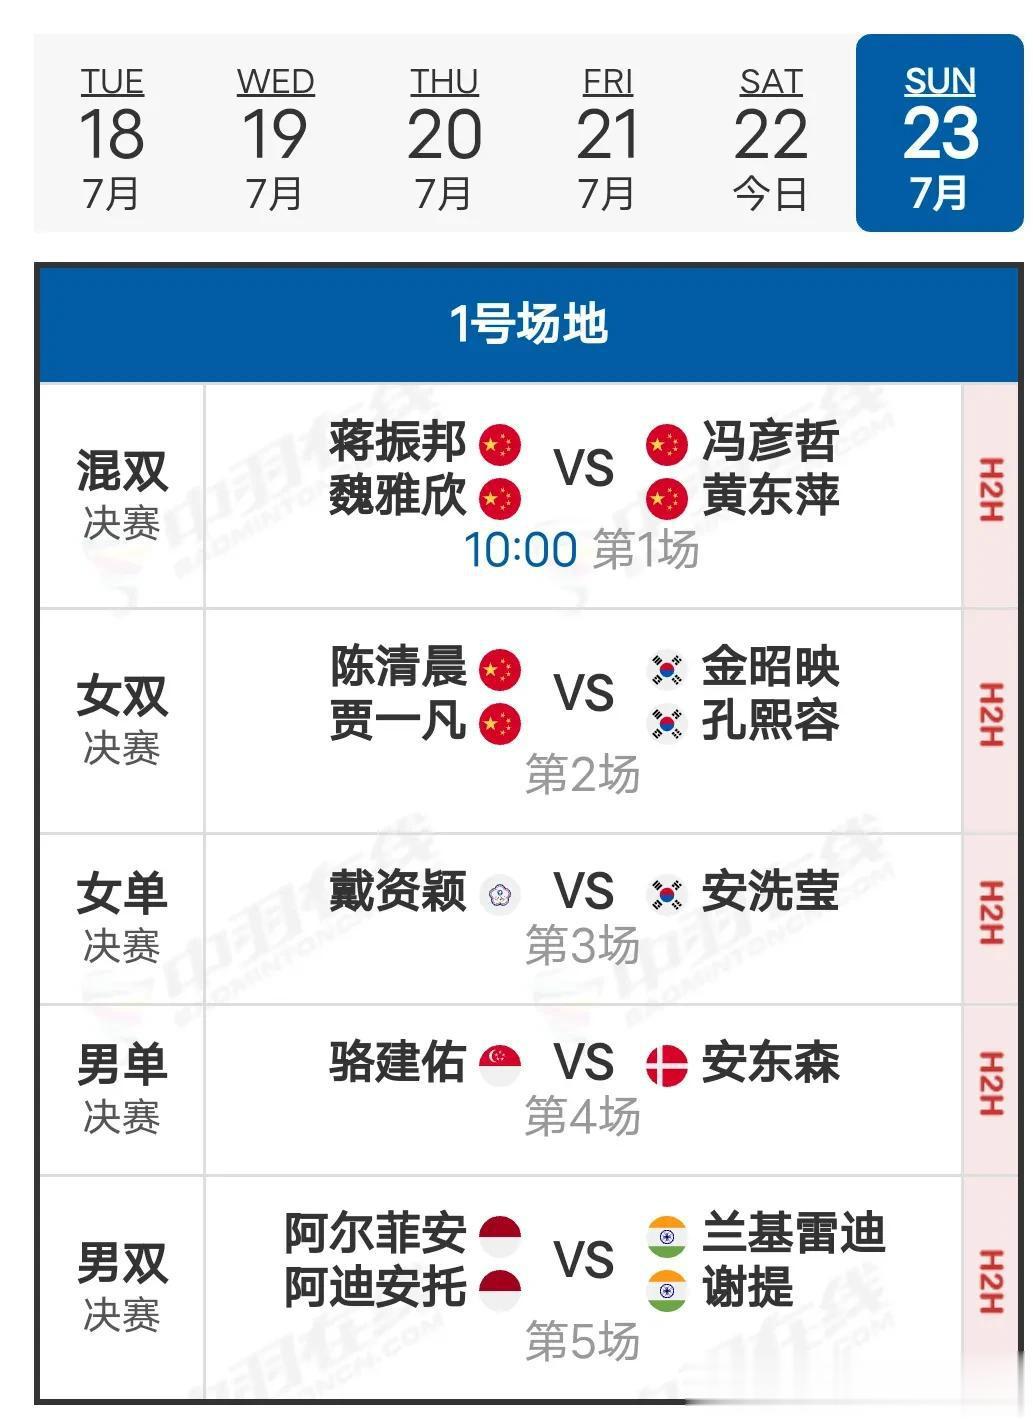  23决赛赛程
     23日决赛于北京时间10:00开赛，国羽两个项目进入决(1)